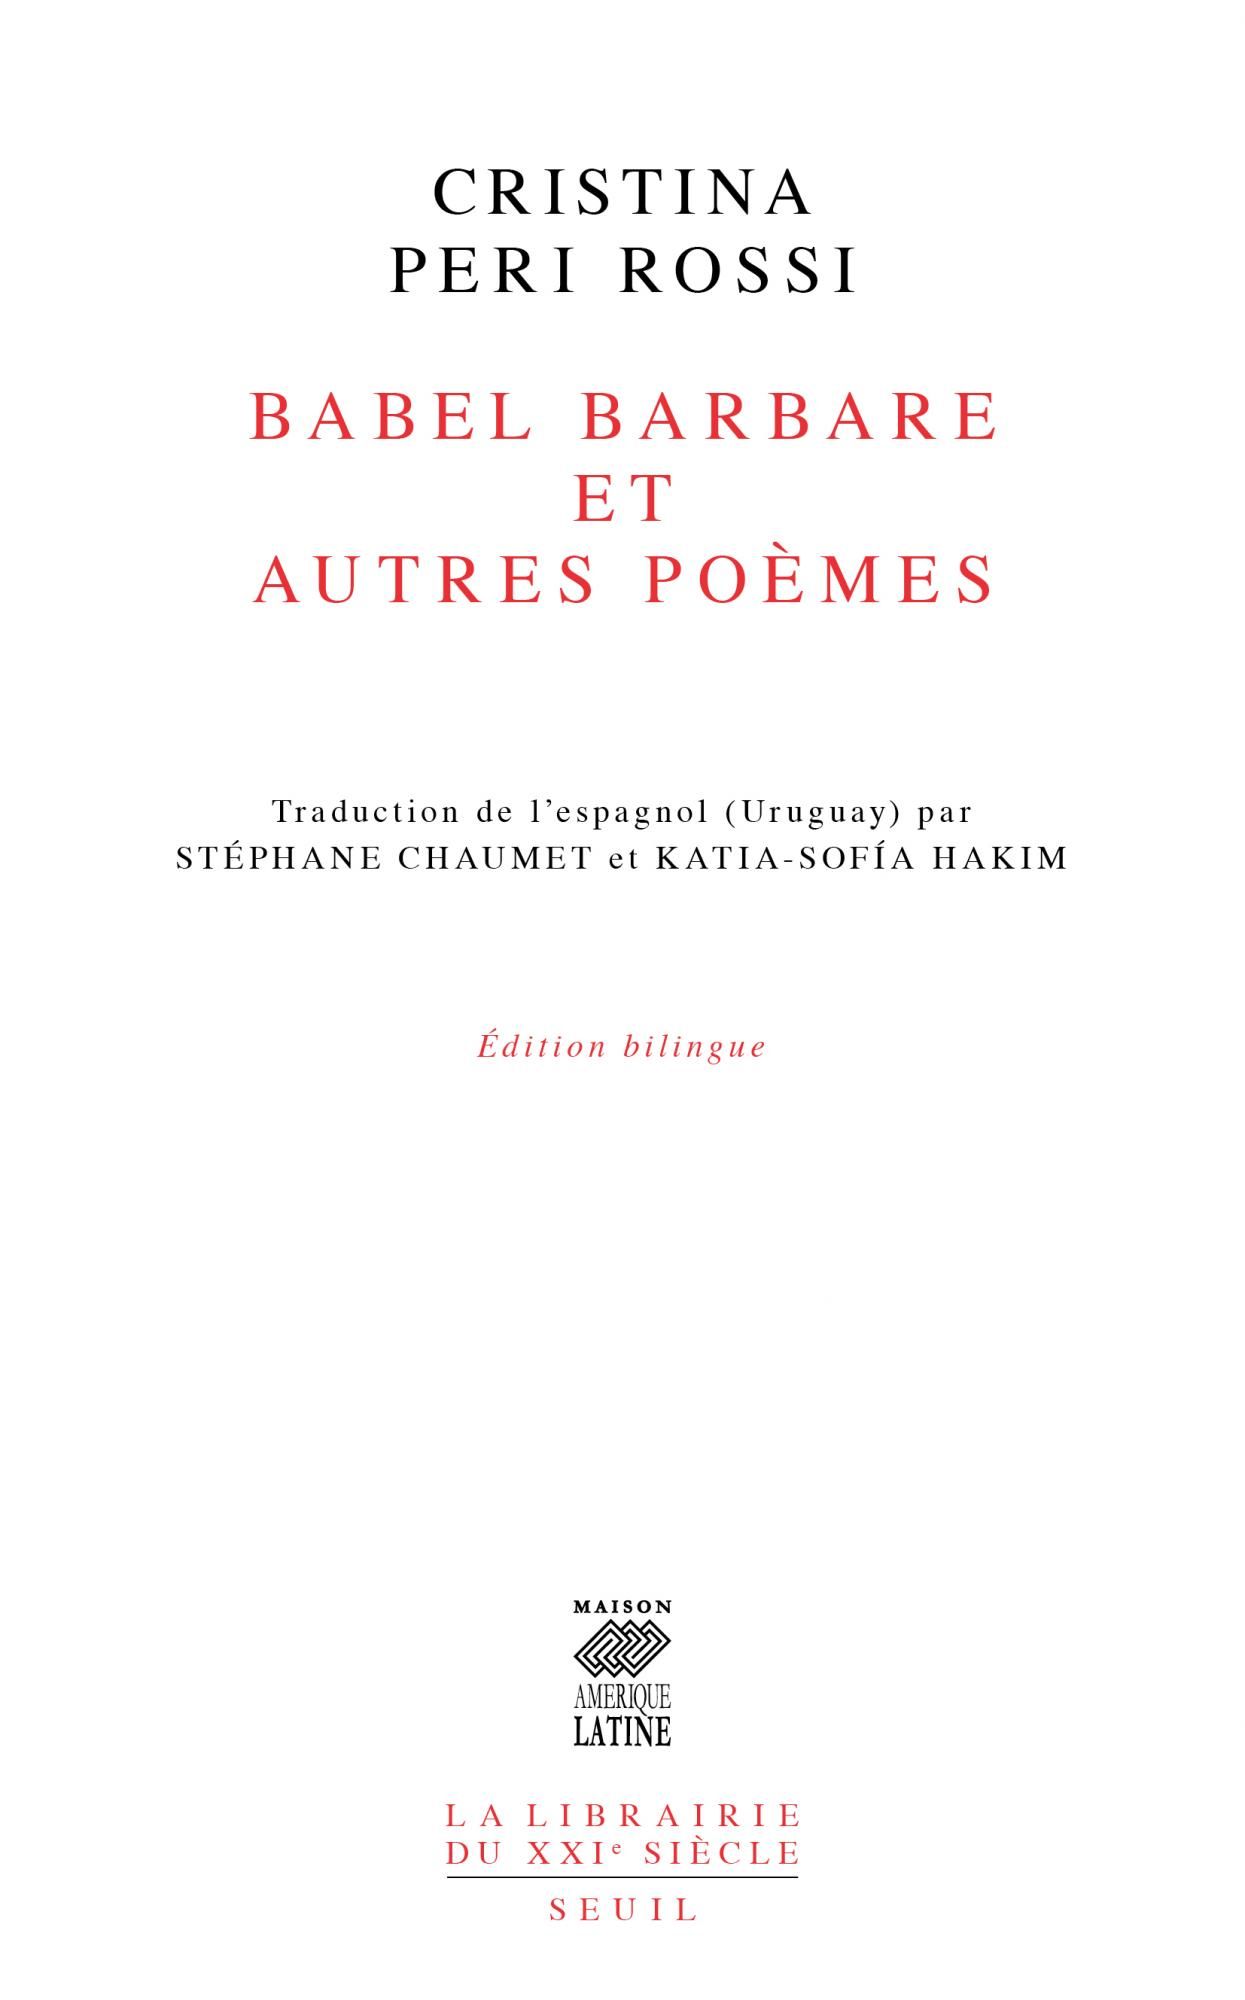 Cristina Peri Rossi, Babel barbare et autres poèmes (trad. Stéphane Chaumet et Katia-Sofia Hakim)